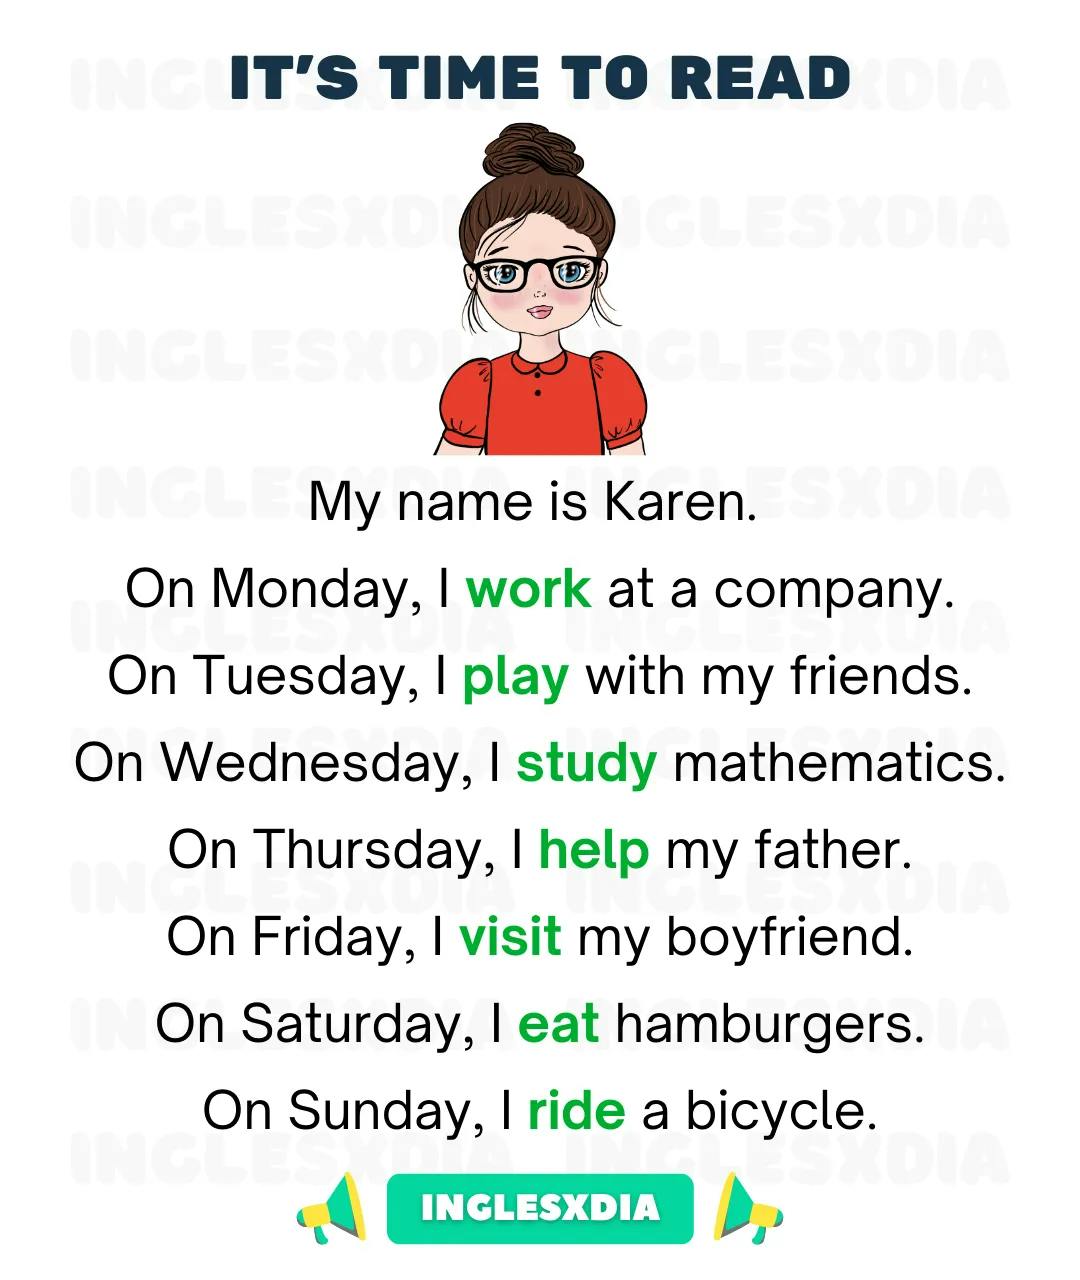 Karen’s Routine